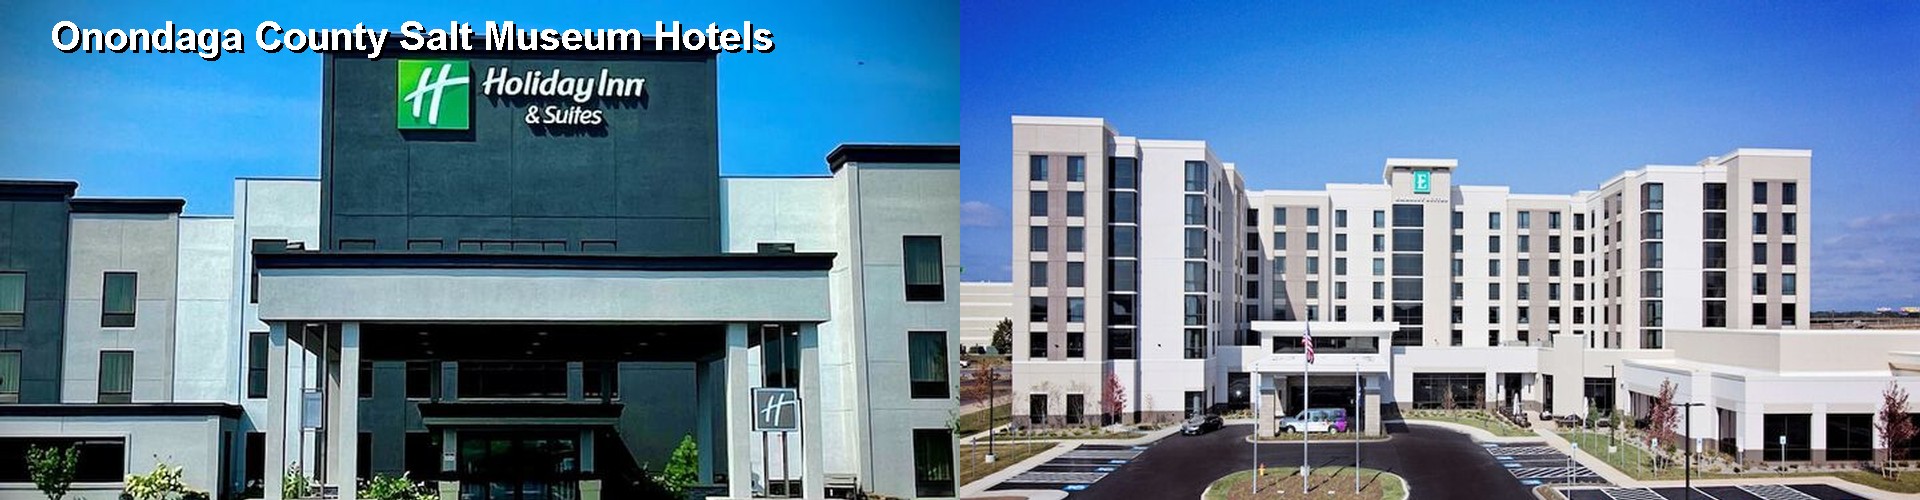 2 Best Hotels near Onondaga County Salt Museum